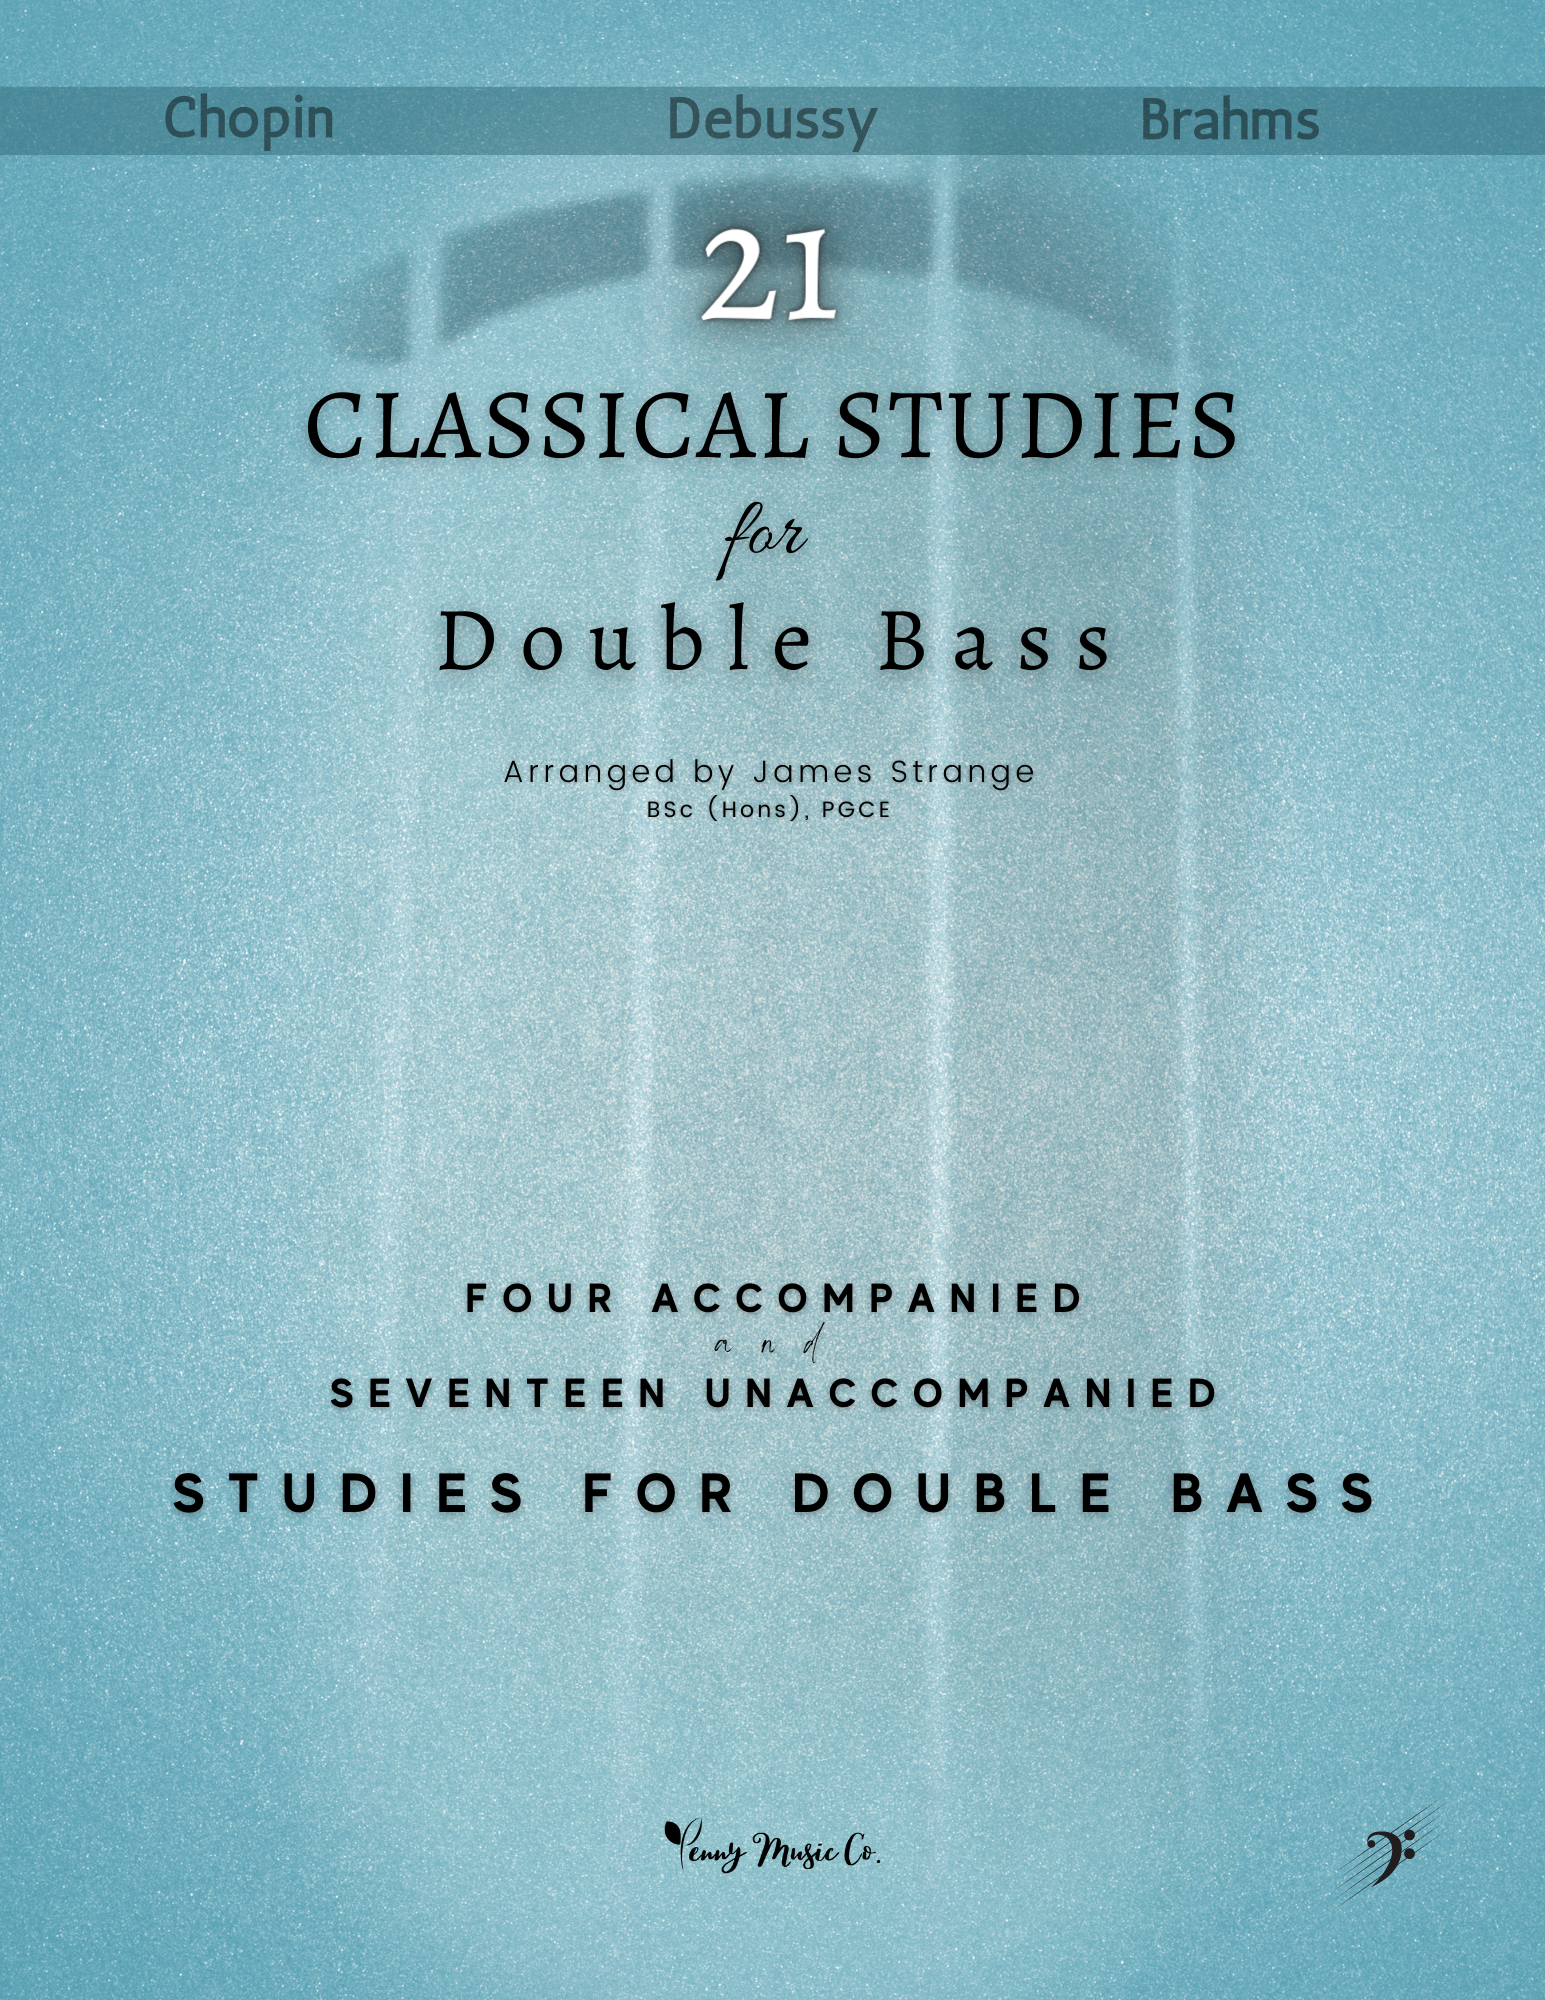 double bass sheet music